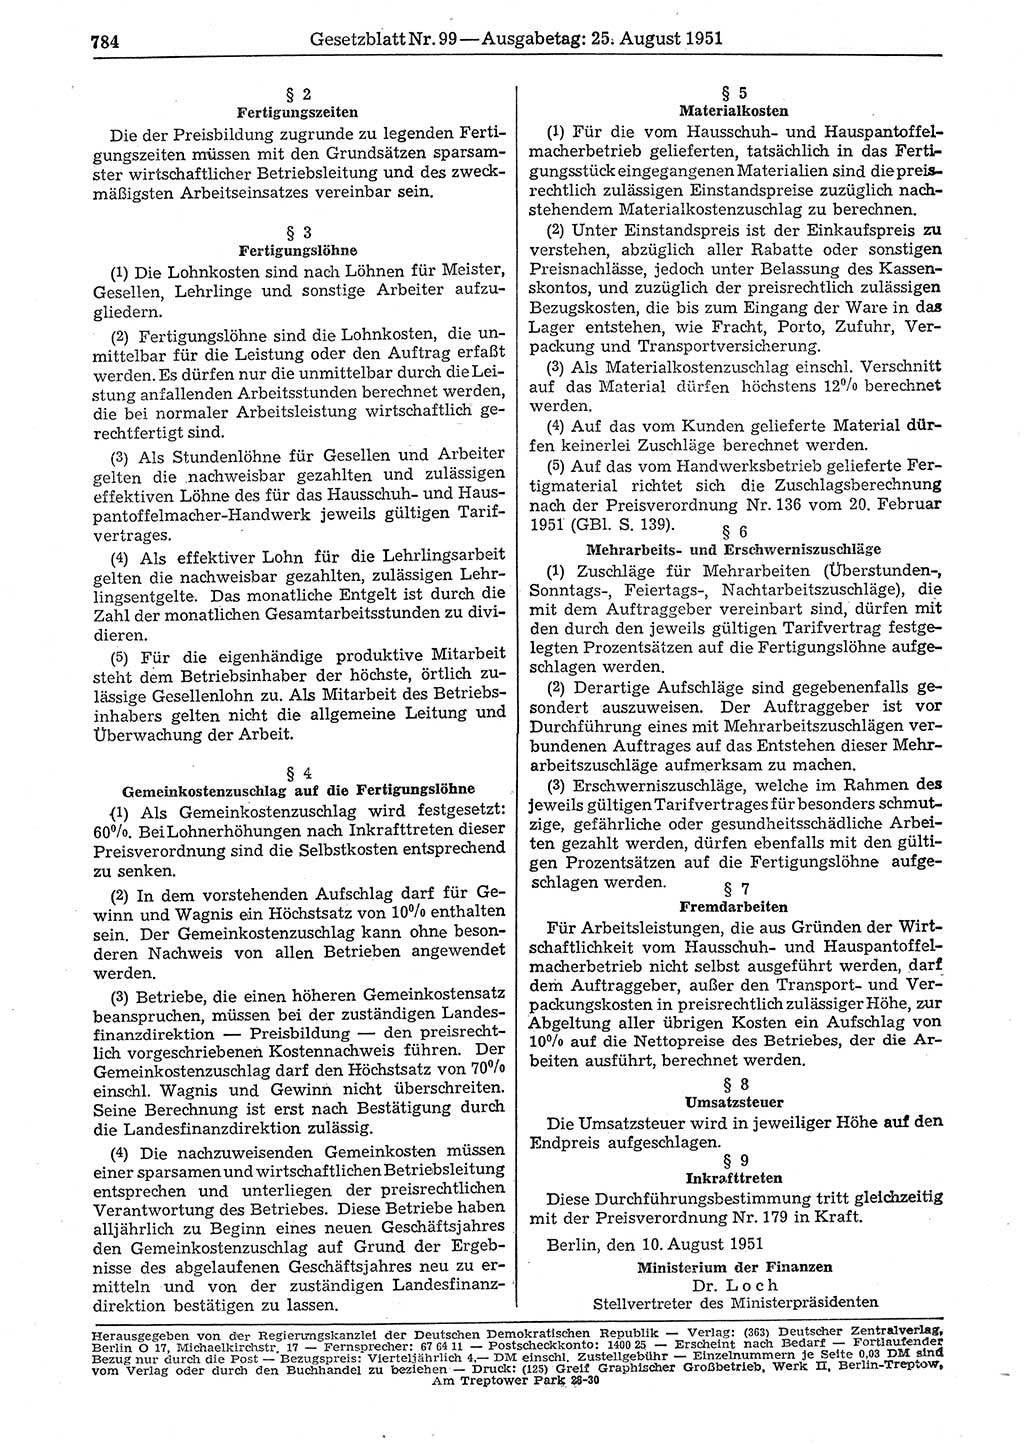 Gesetzblatt (GBl.) der Deutschen Demokratischen Republik (DDR) 1951, Seite 784 (GBl. DDR 1951, S. 784)